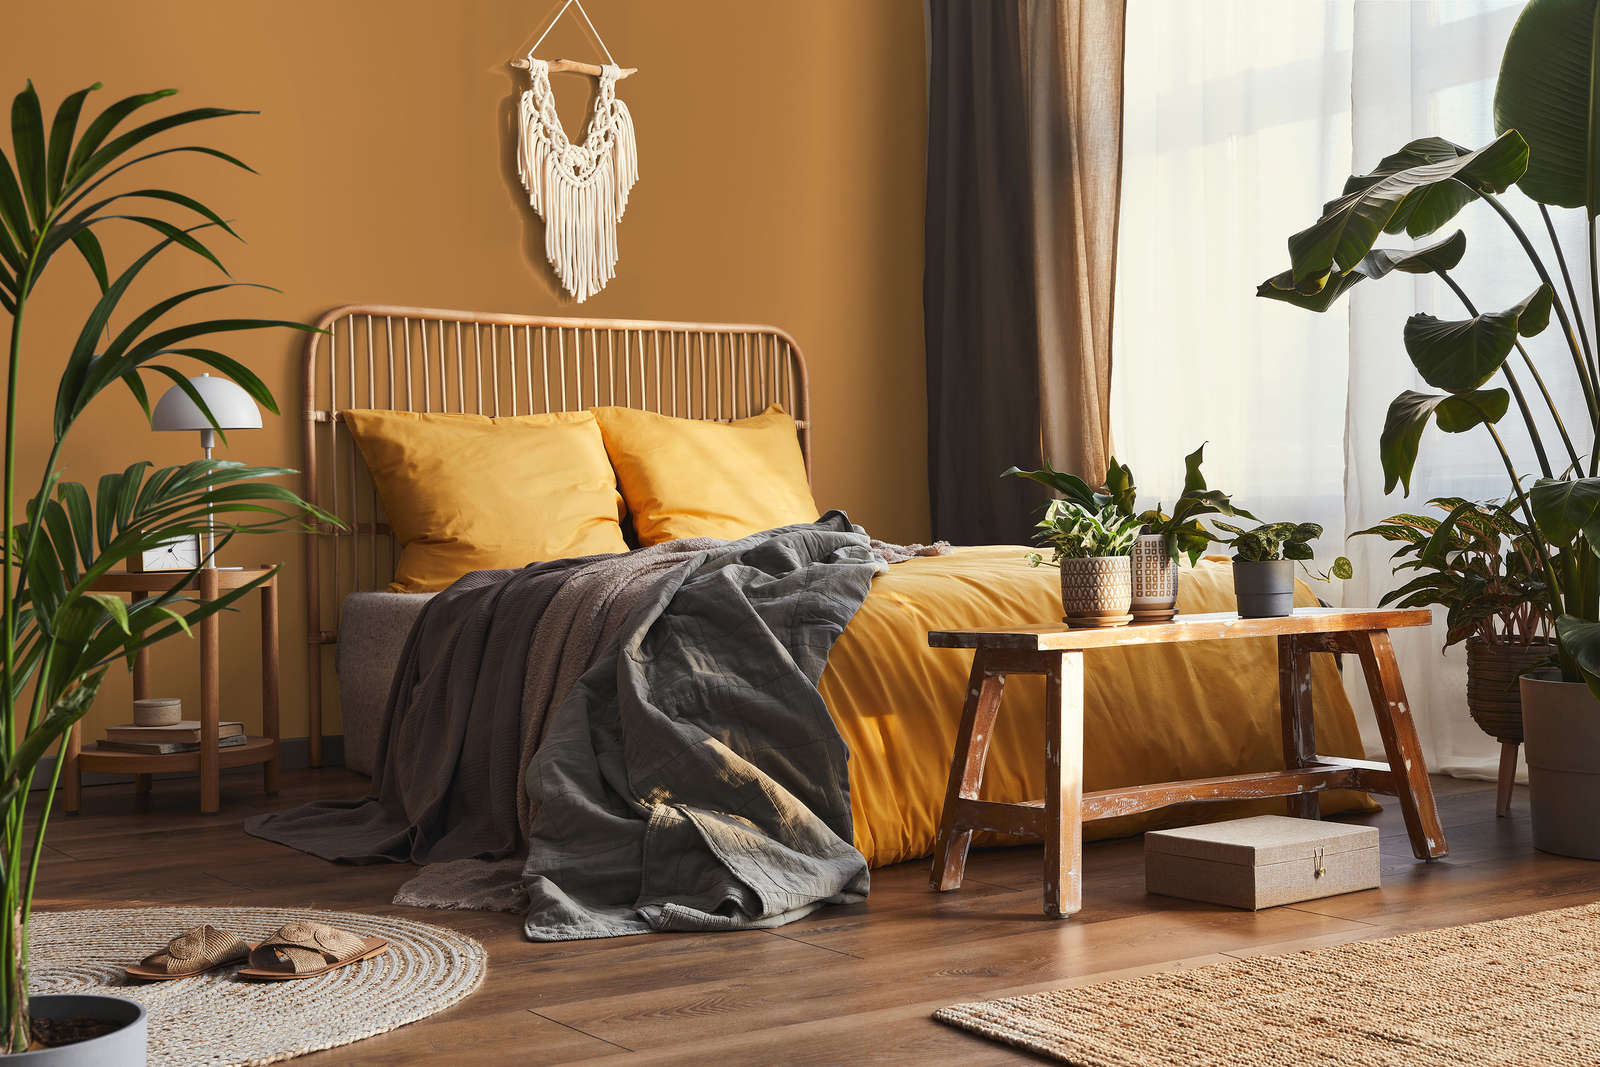             Premium Wandfarbe kräftiges Hellbraun »Beige Orange/Sassy Saffron« NW814 – 5 Liter
        